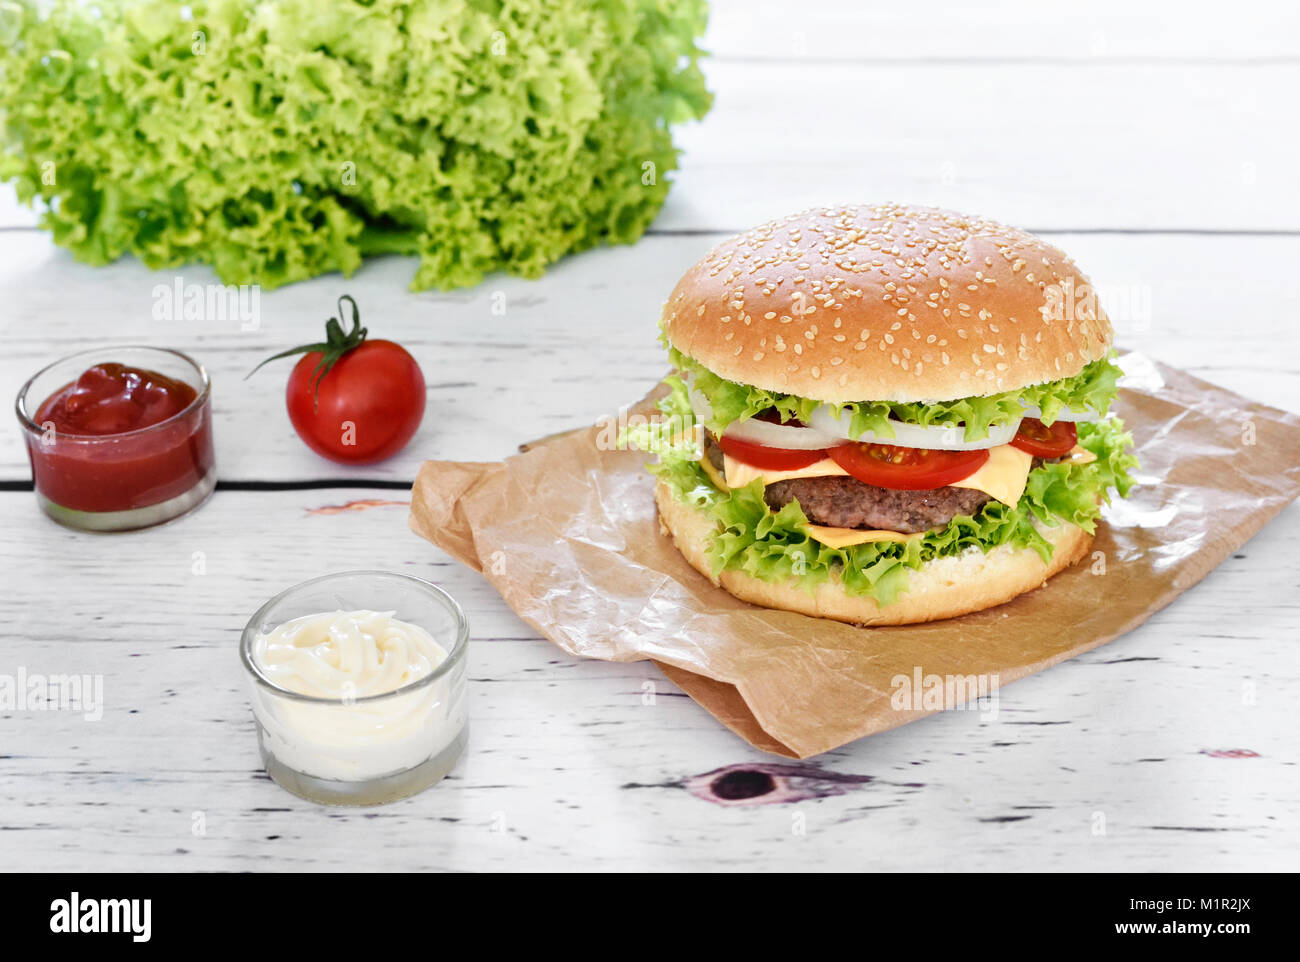 Gourmet Burger mit Soßen auf einem weißen Tisch. Hamburger oder Cheeseburger mit frischen Tomaten, Kopfsalat und Rindfleisch Patty, Fast food Hintergrund. Stockfoto